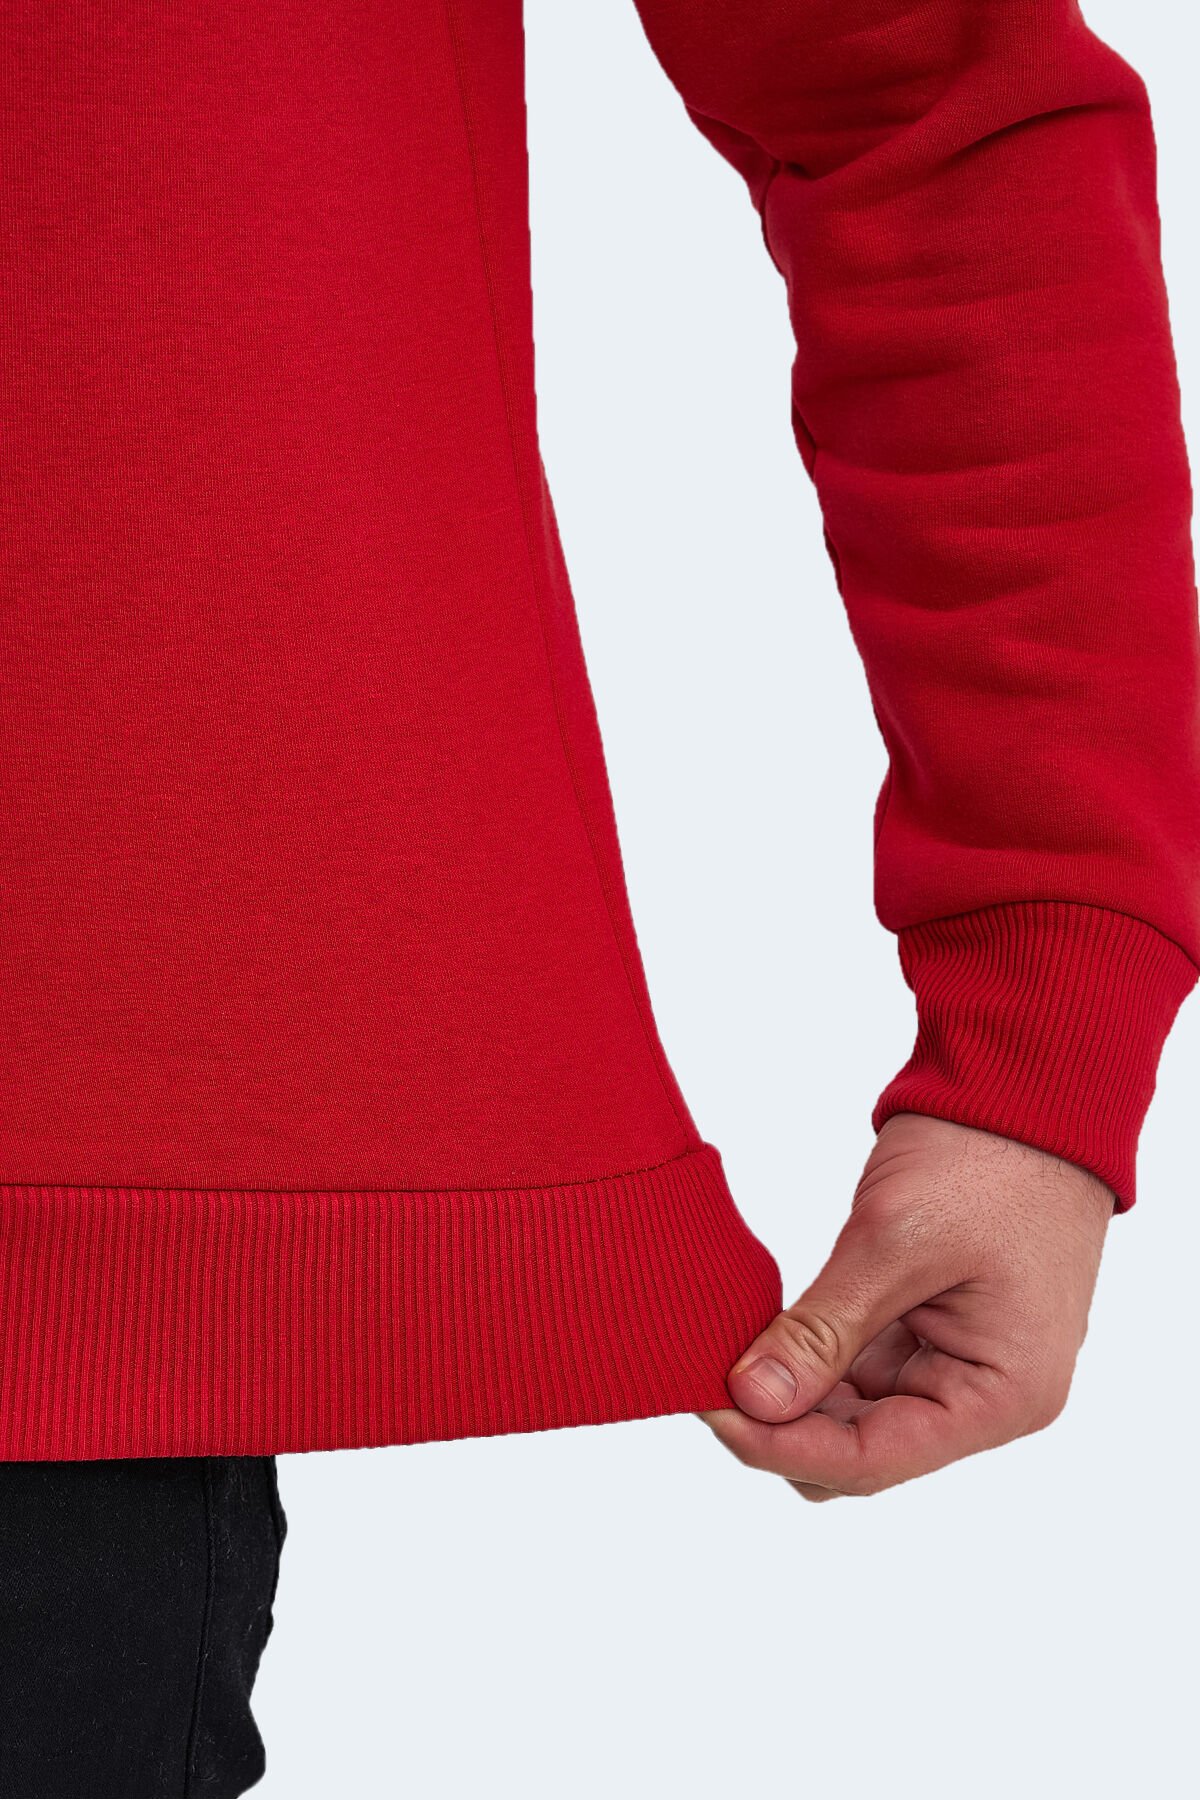 KRIS IN Erkek Sweatshirt Kırmızı - Thumbnail